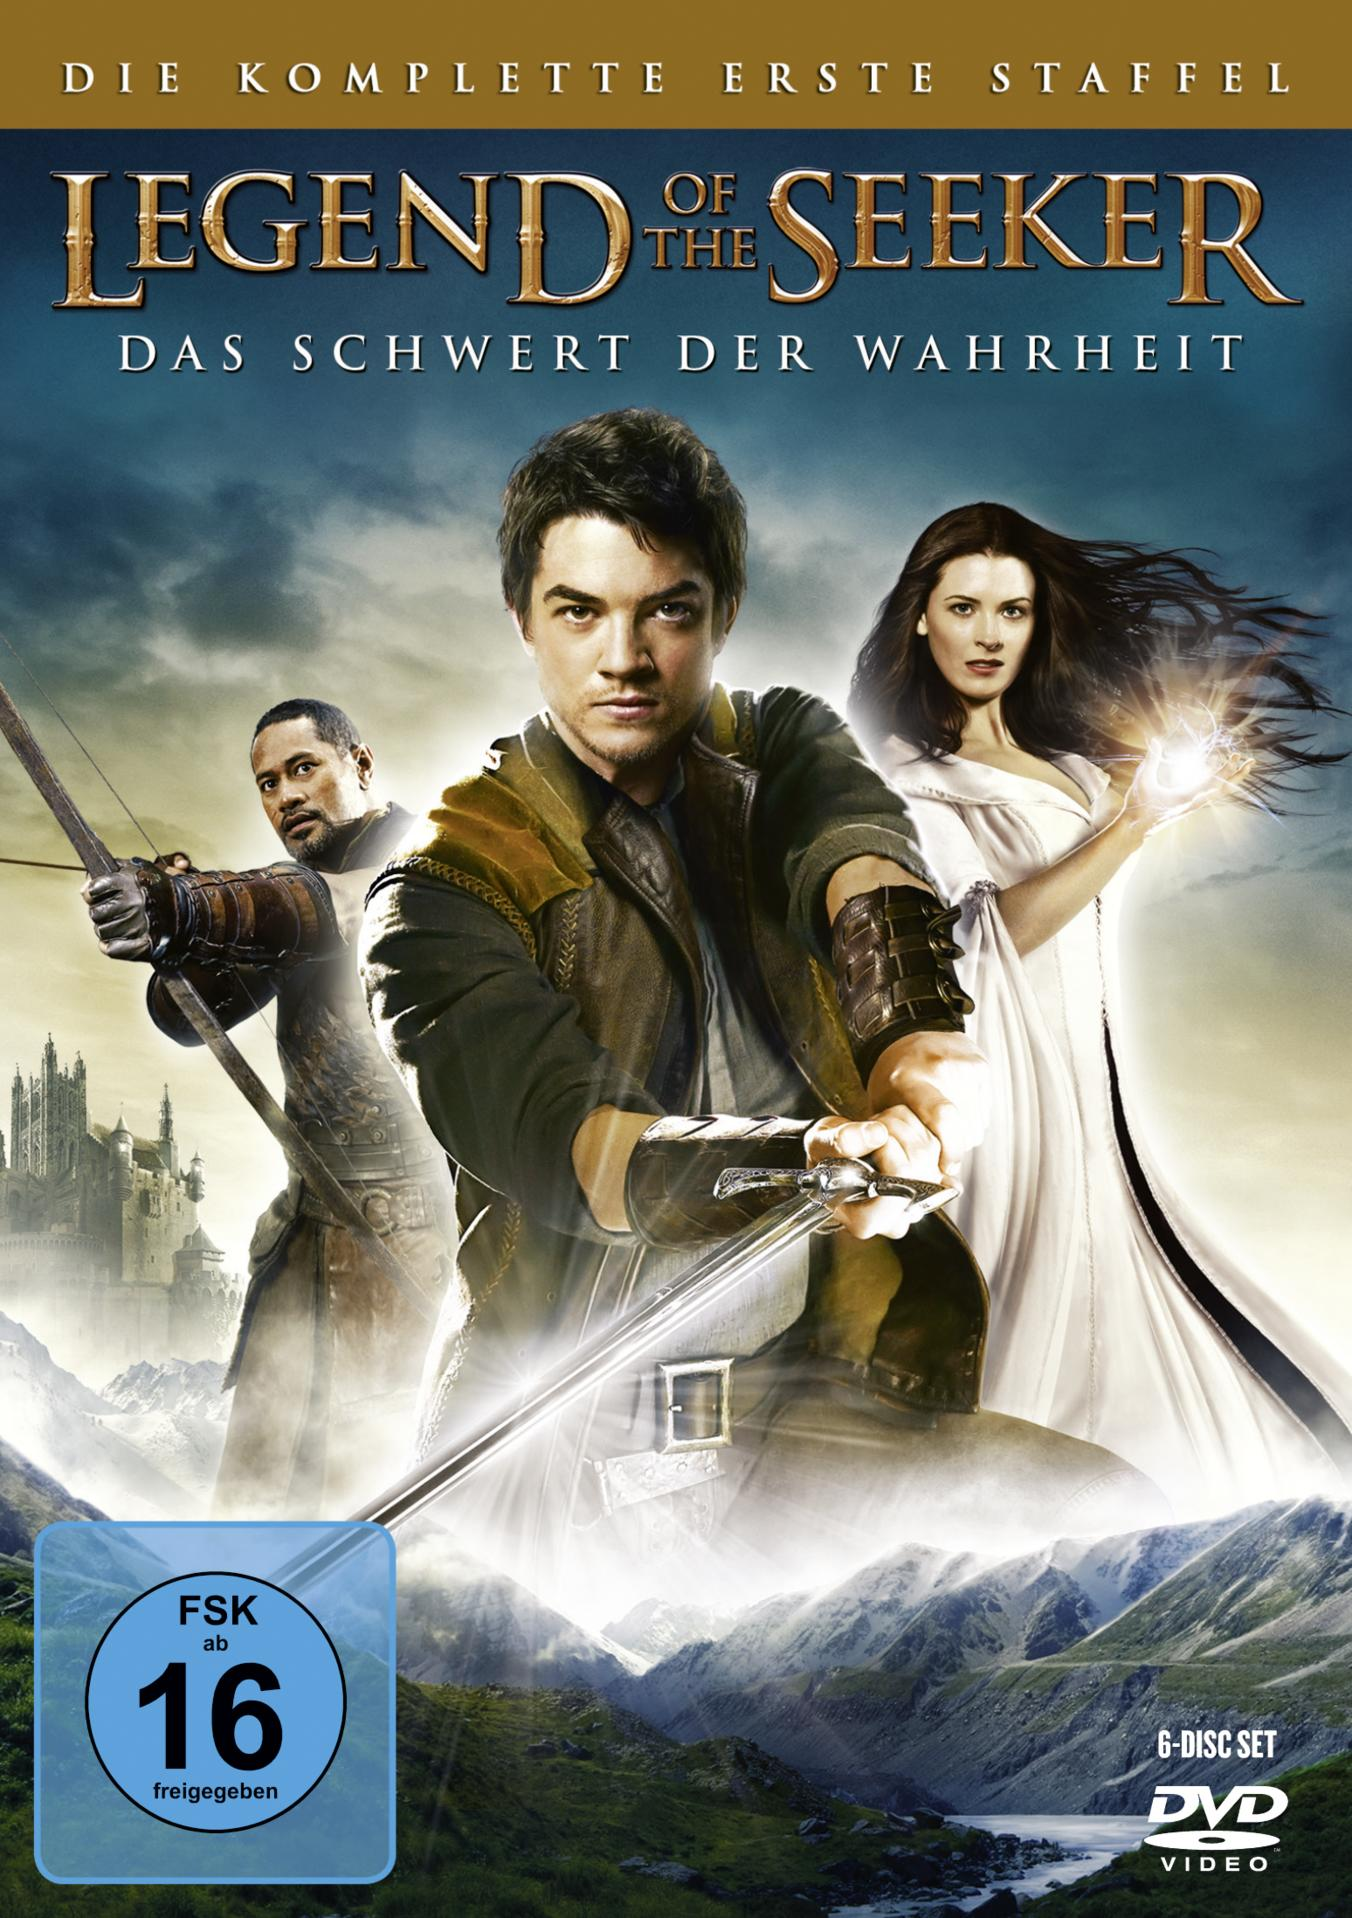 - the Staffel of Legend komplette erste DVD Die Seeker